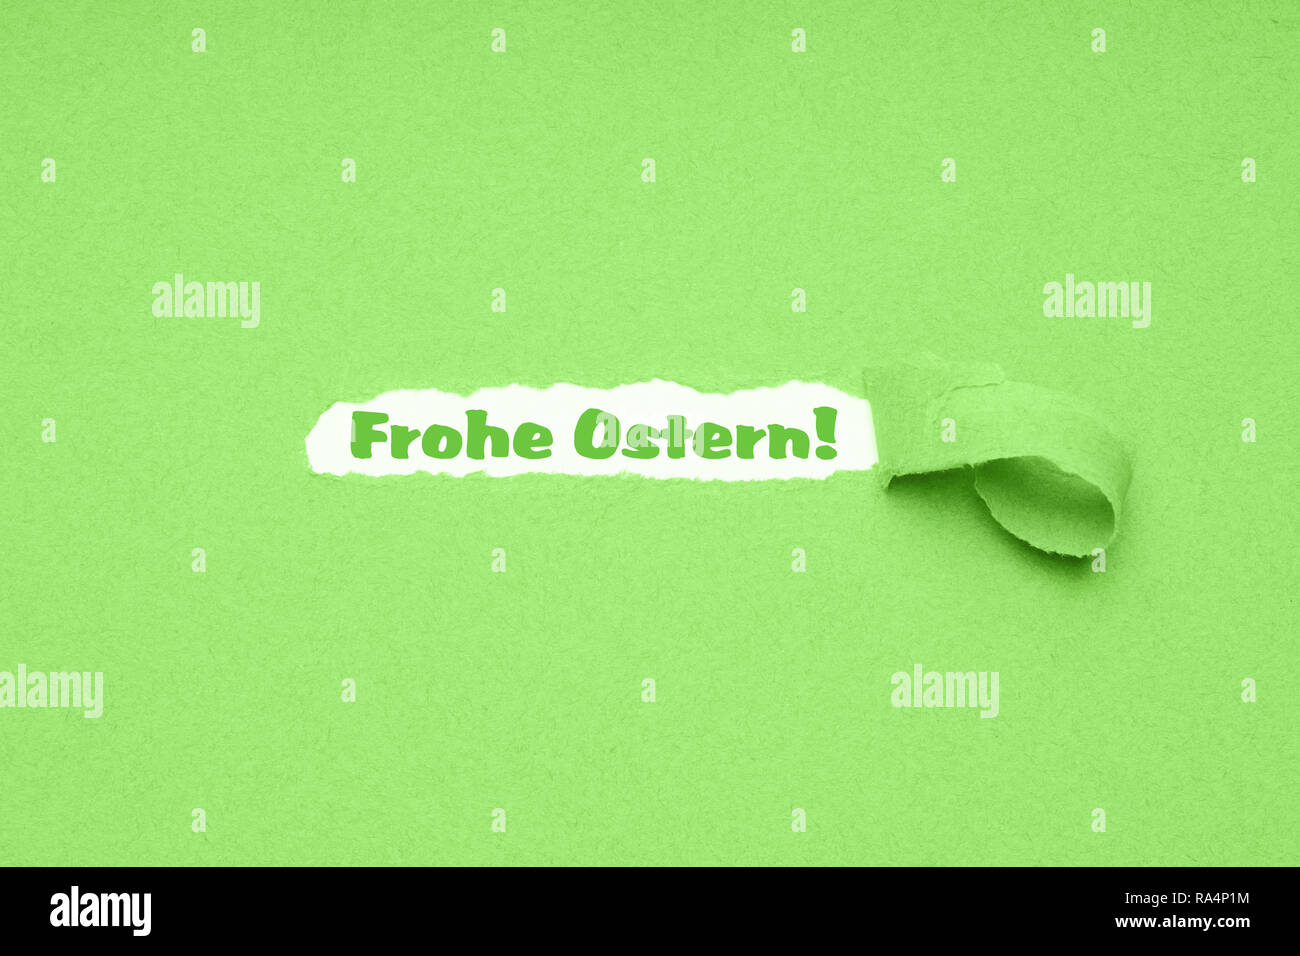 Frohe Ostern ist Deutsch für Frohe Ostern - Loch im Grünbuch Hintergrund zerrissen Ostern zu offenbaren Gruß Stockfoto